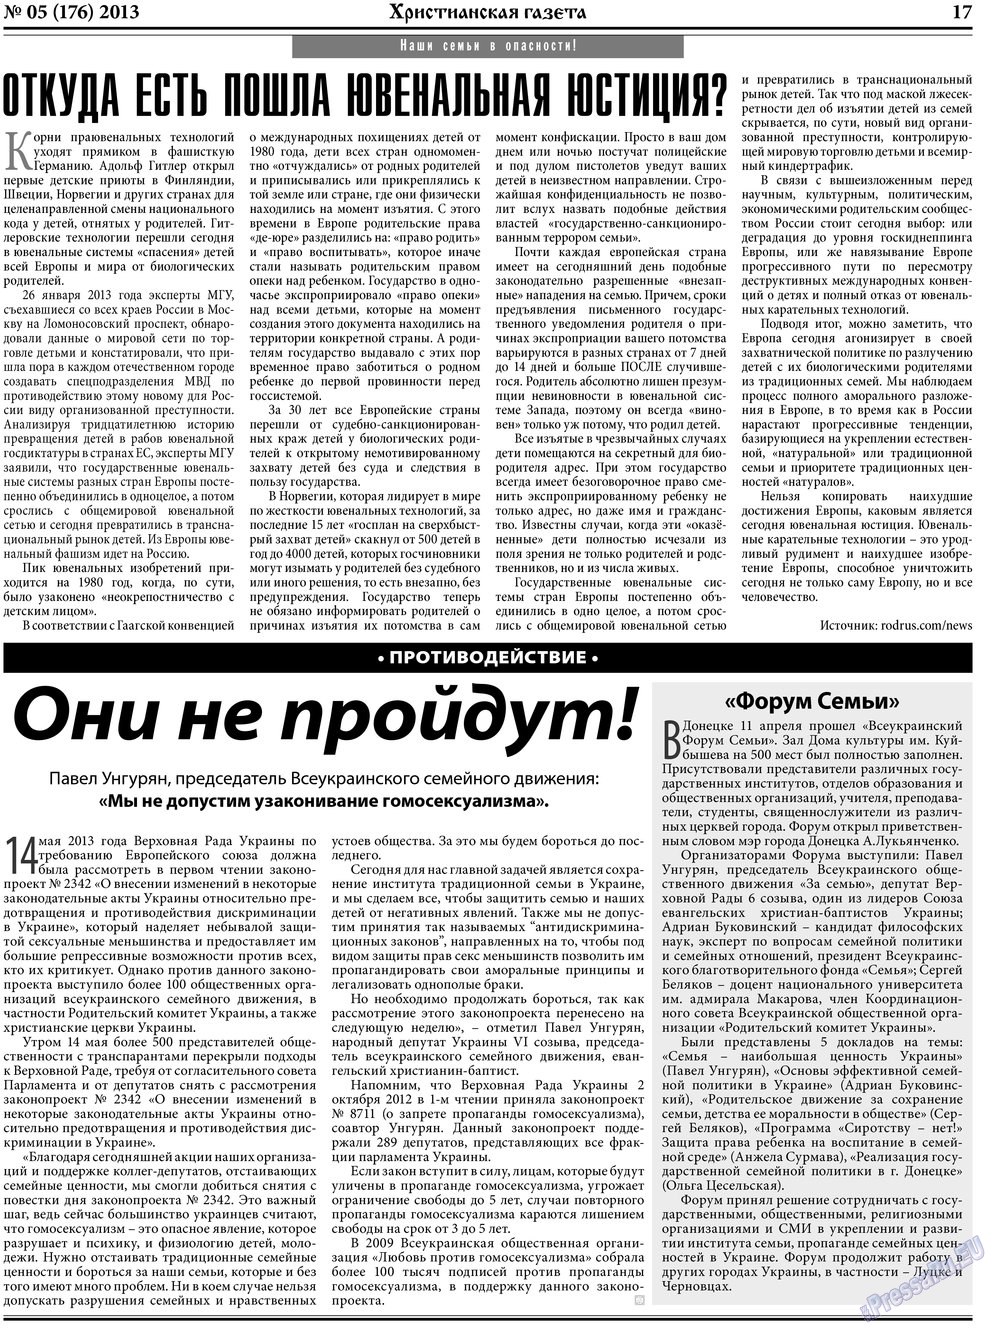 Hristianskaja gazeta (Zeitung). 2013 Jahr, Ausgabe 5, Seite 25